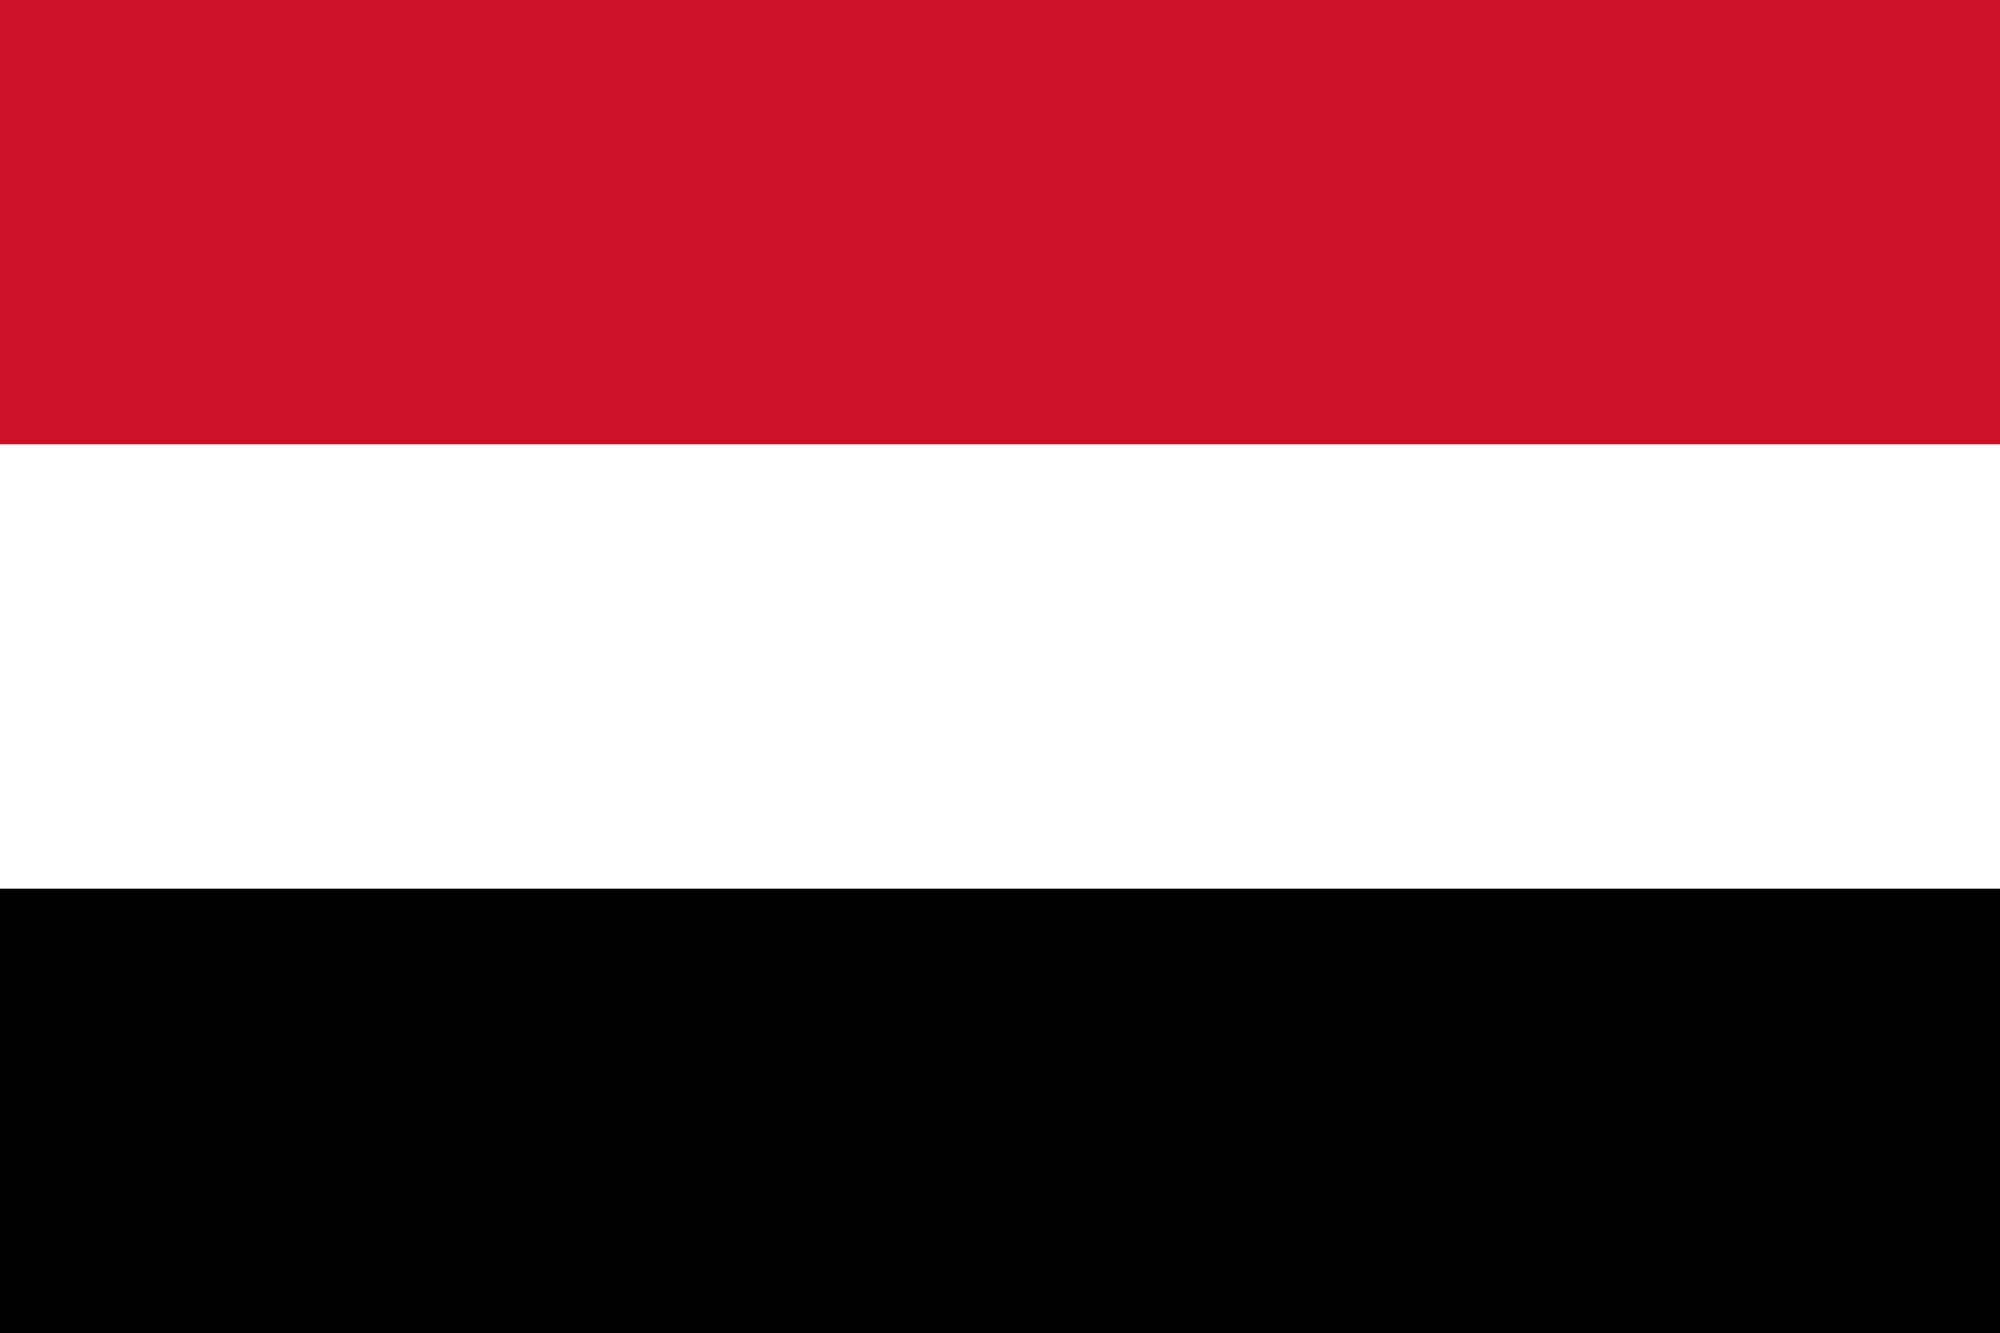  اليمن تبلغ واشنطن تحفظها على هجوم محافظة البيضاء